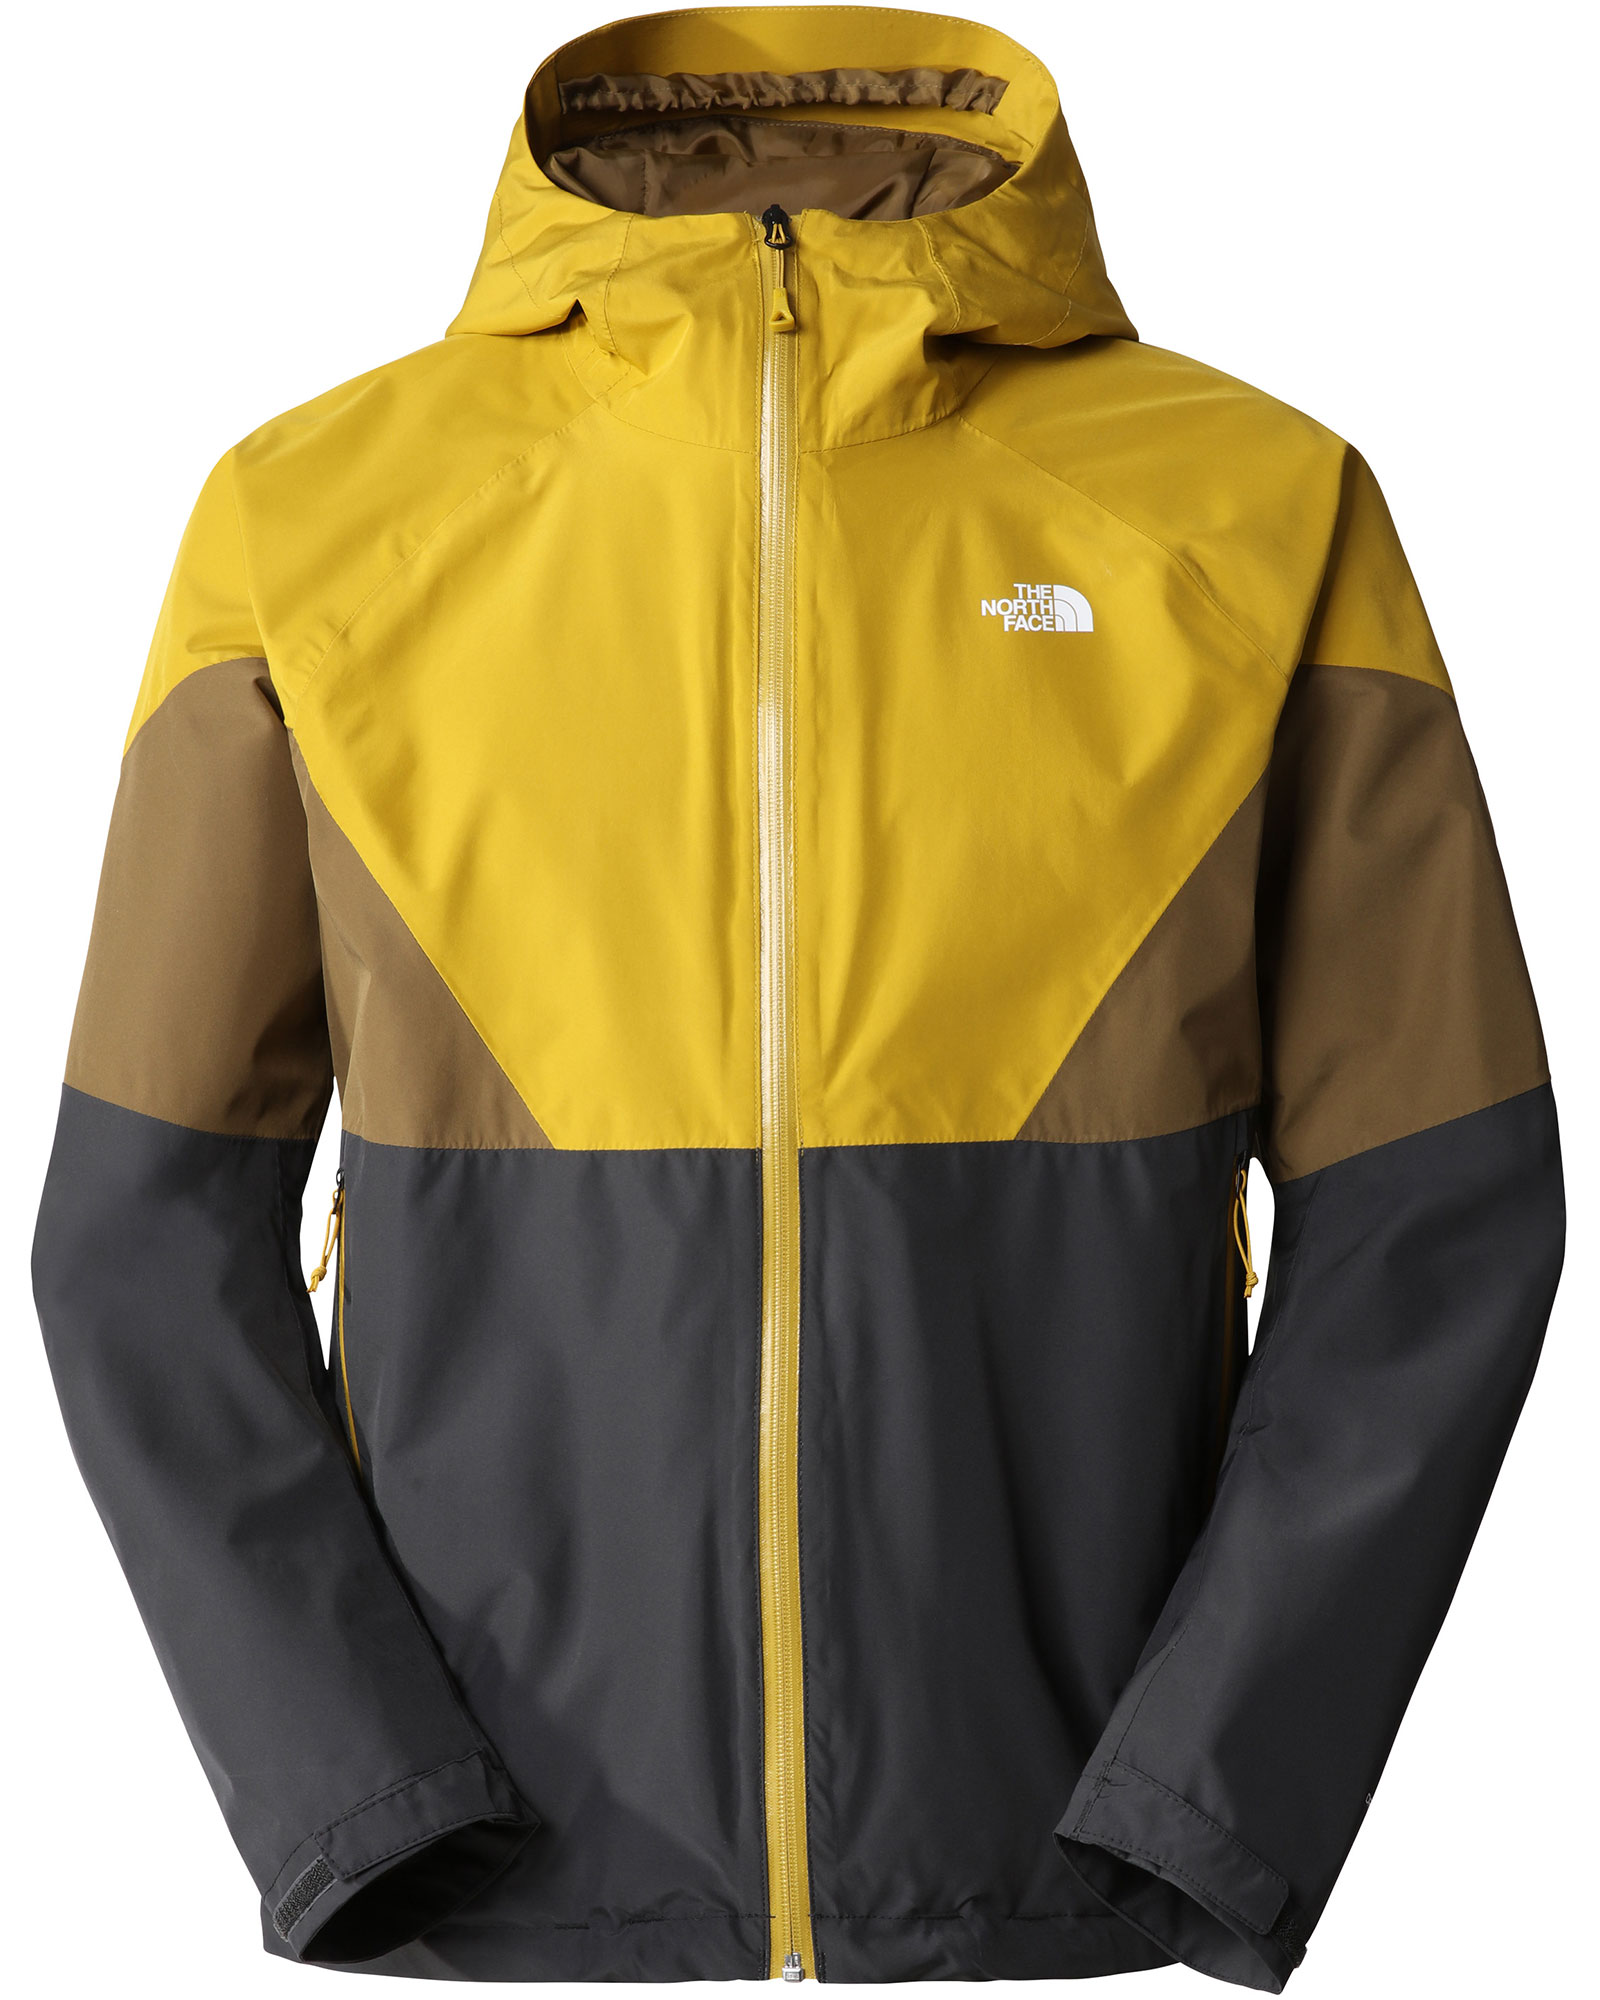 The North Face Lightning Men’s Jacket - Asphalt Grey/Mineral Gold XL